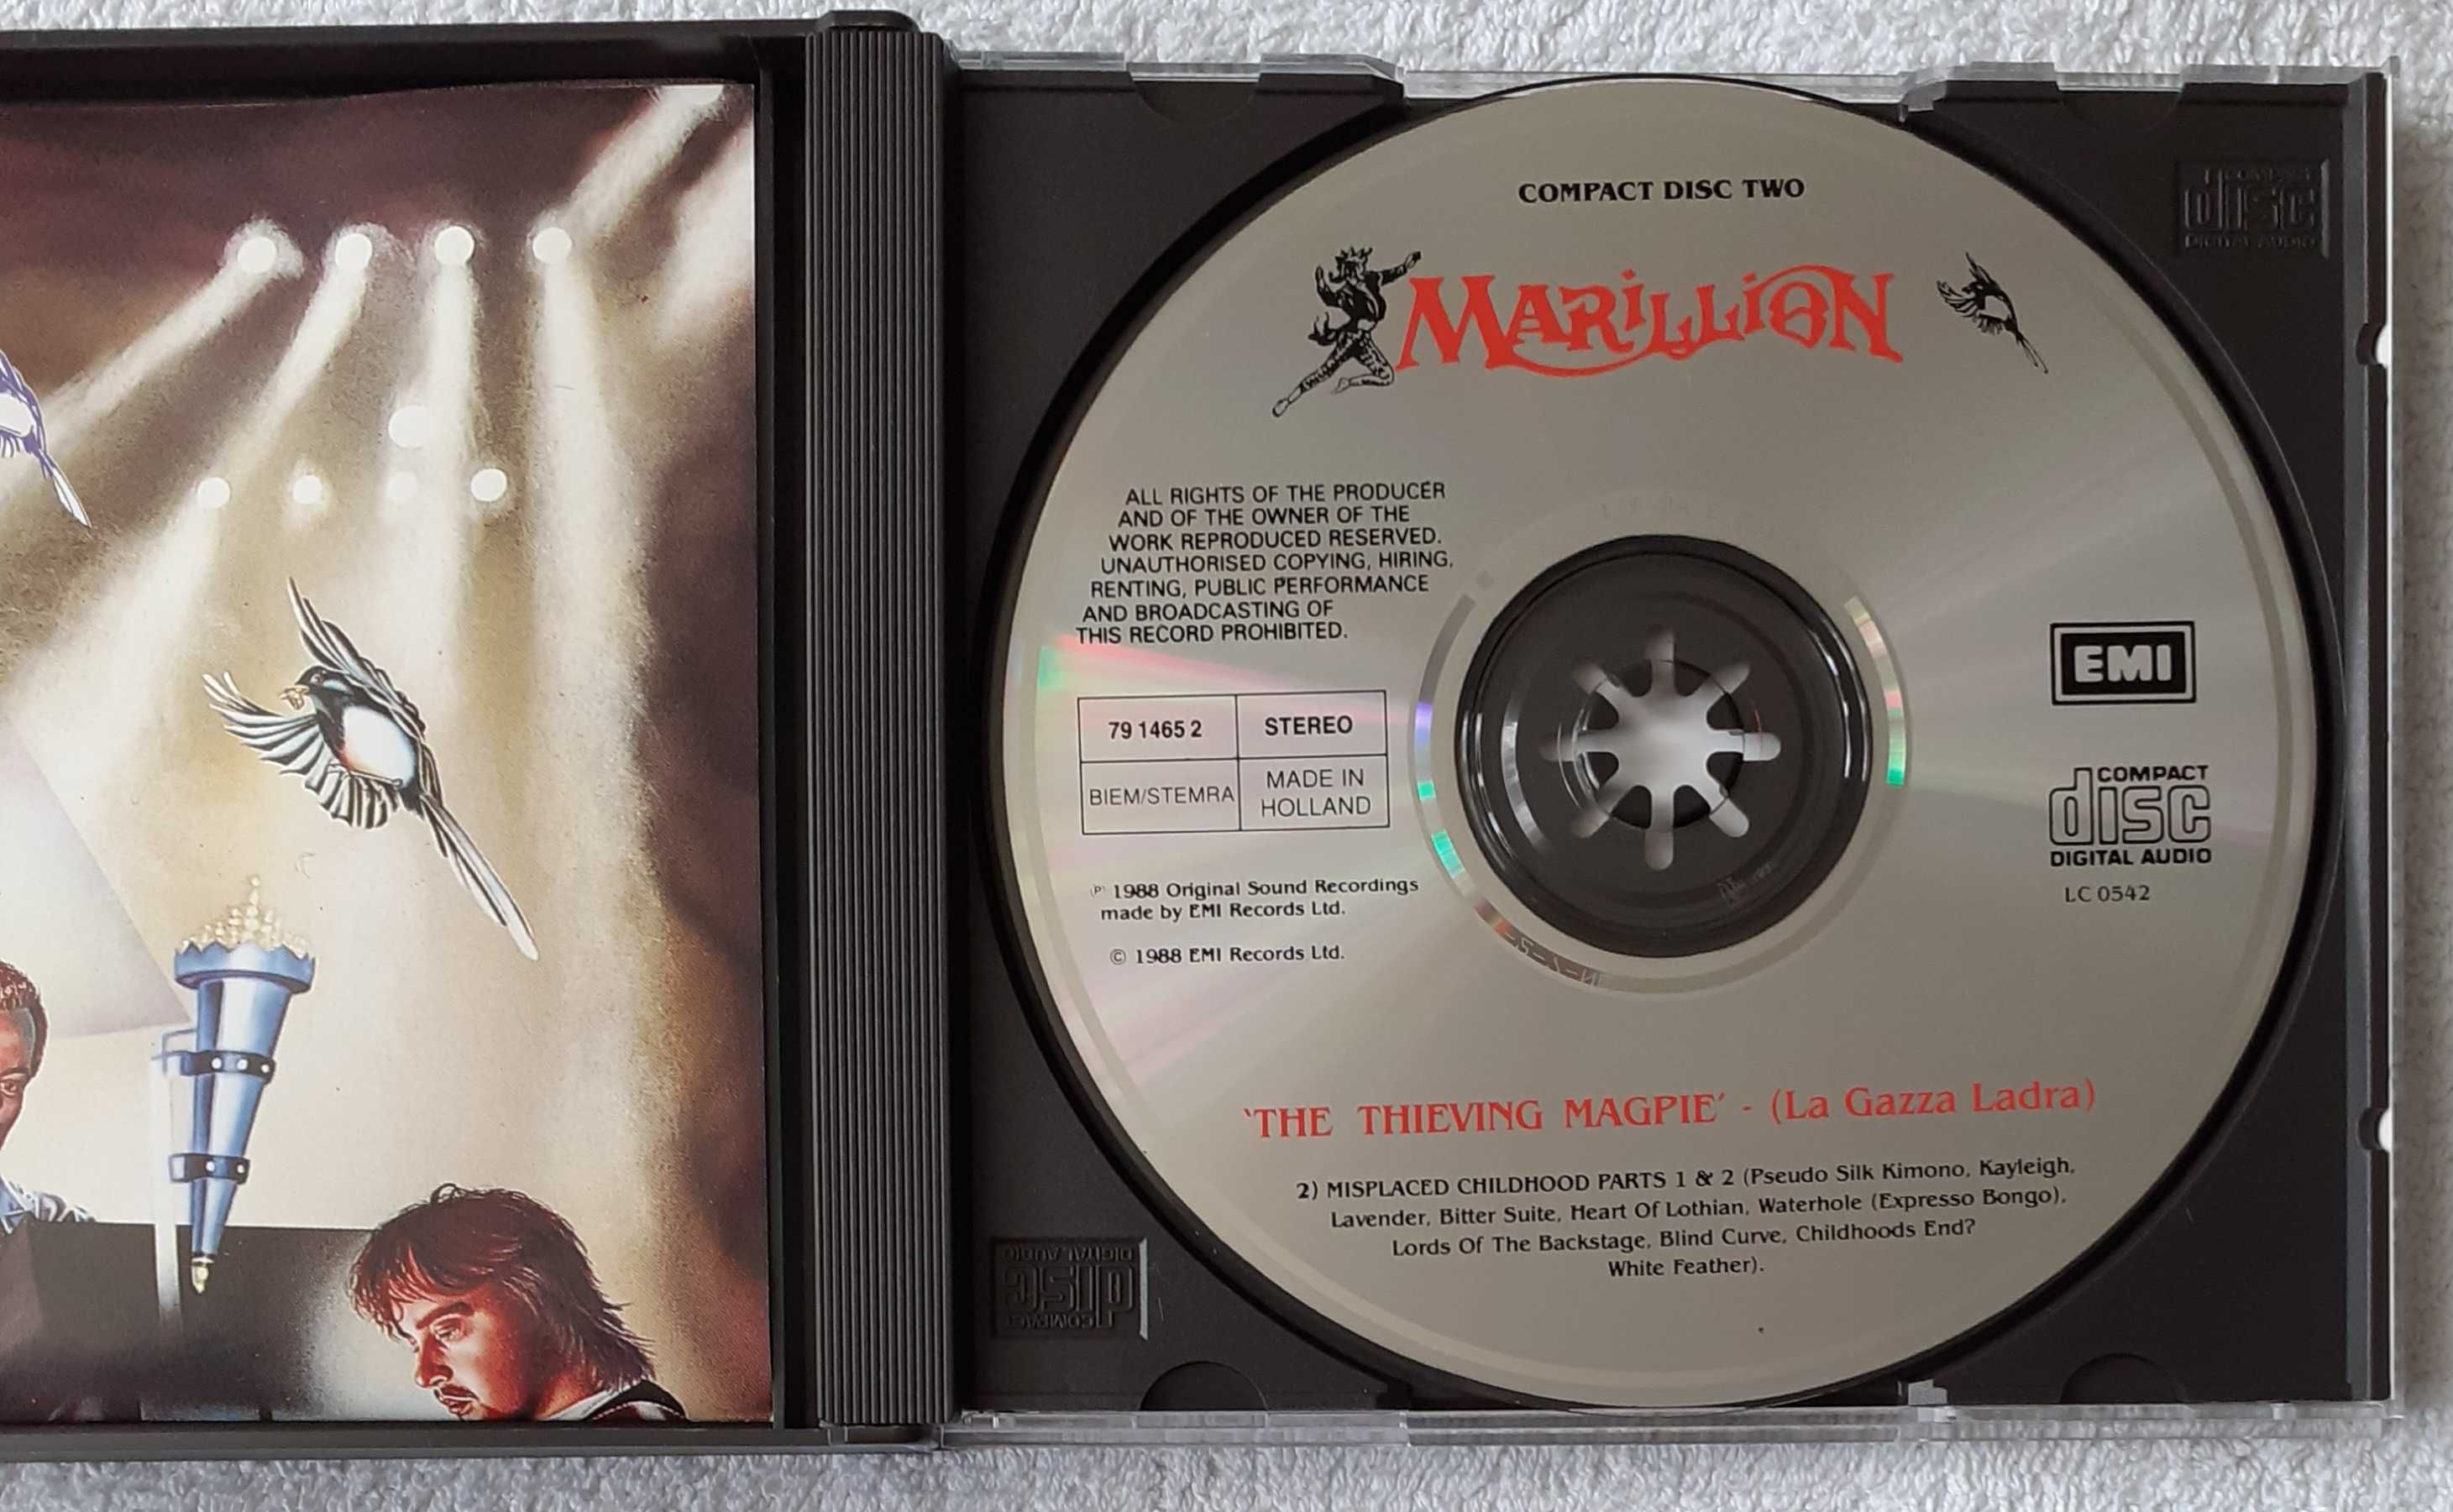 Marillion – The Thieving Magpie (La Gazza Ladra) (2 x CD) plus GRATIS